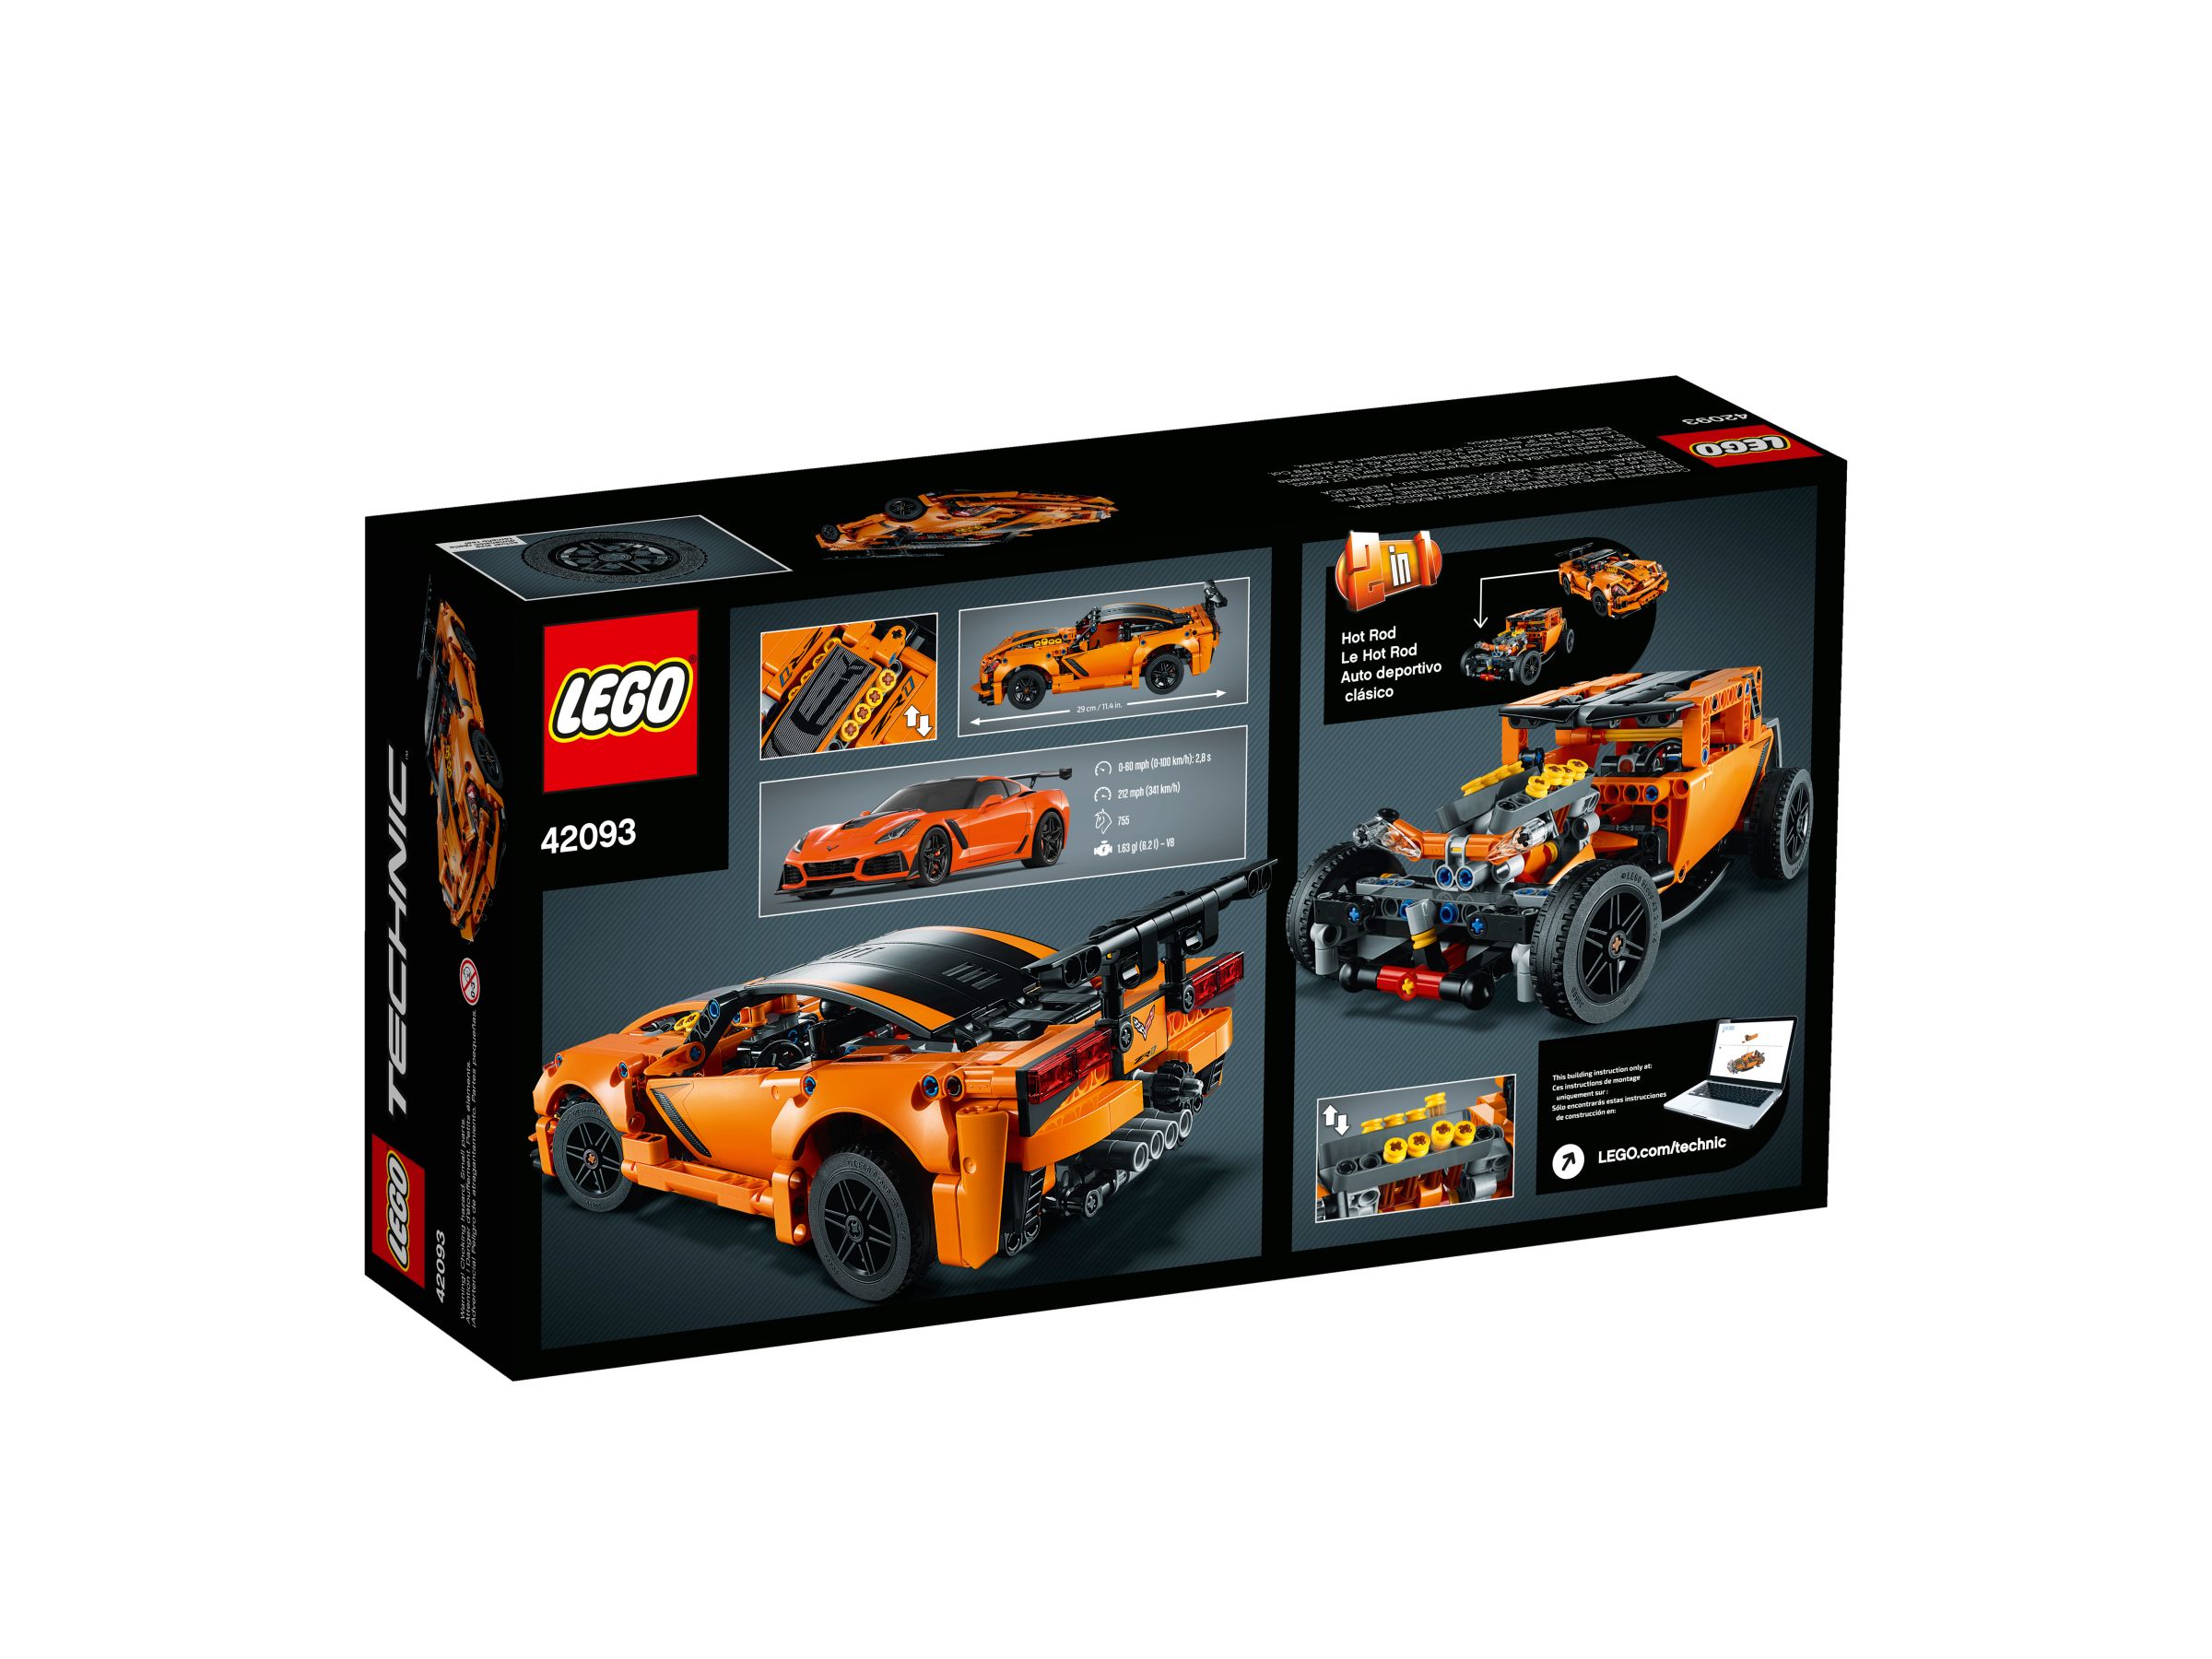 LEGO Technic 42093 Chevrolet Corvette ZR1 LEGO_42093_alt4.jpg